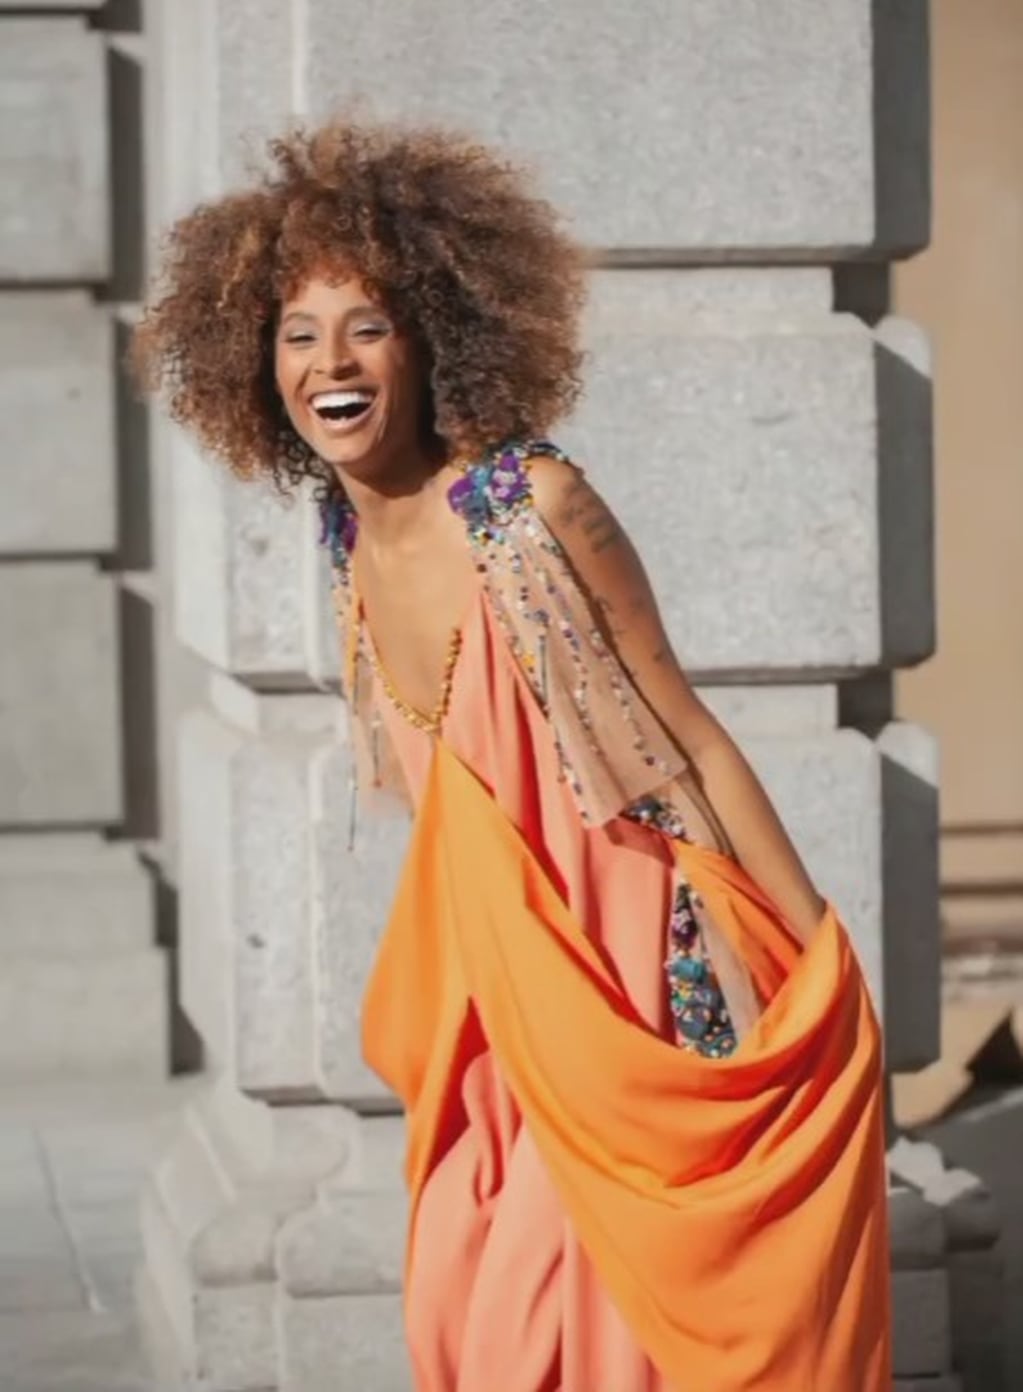 Una modelo española luciendo en Madrid uno de los vestidos de la colección “Reviviendo”, de Julieta Cardozo.